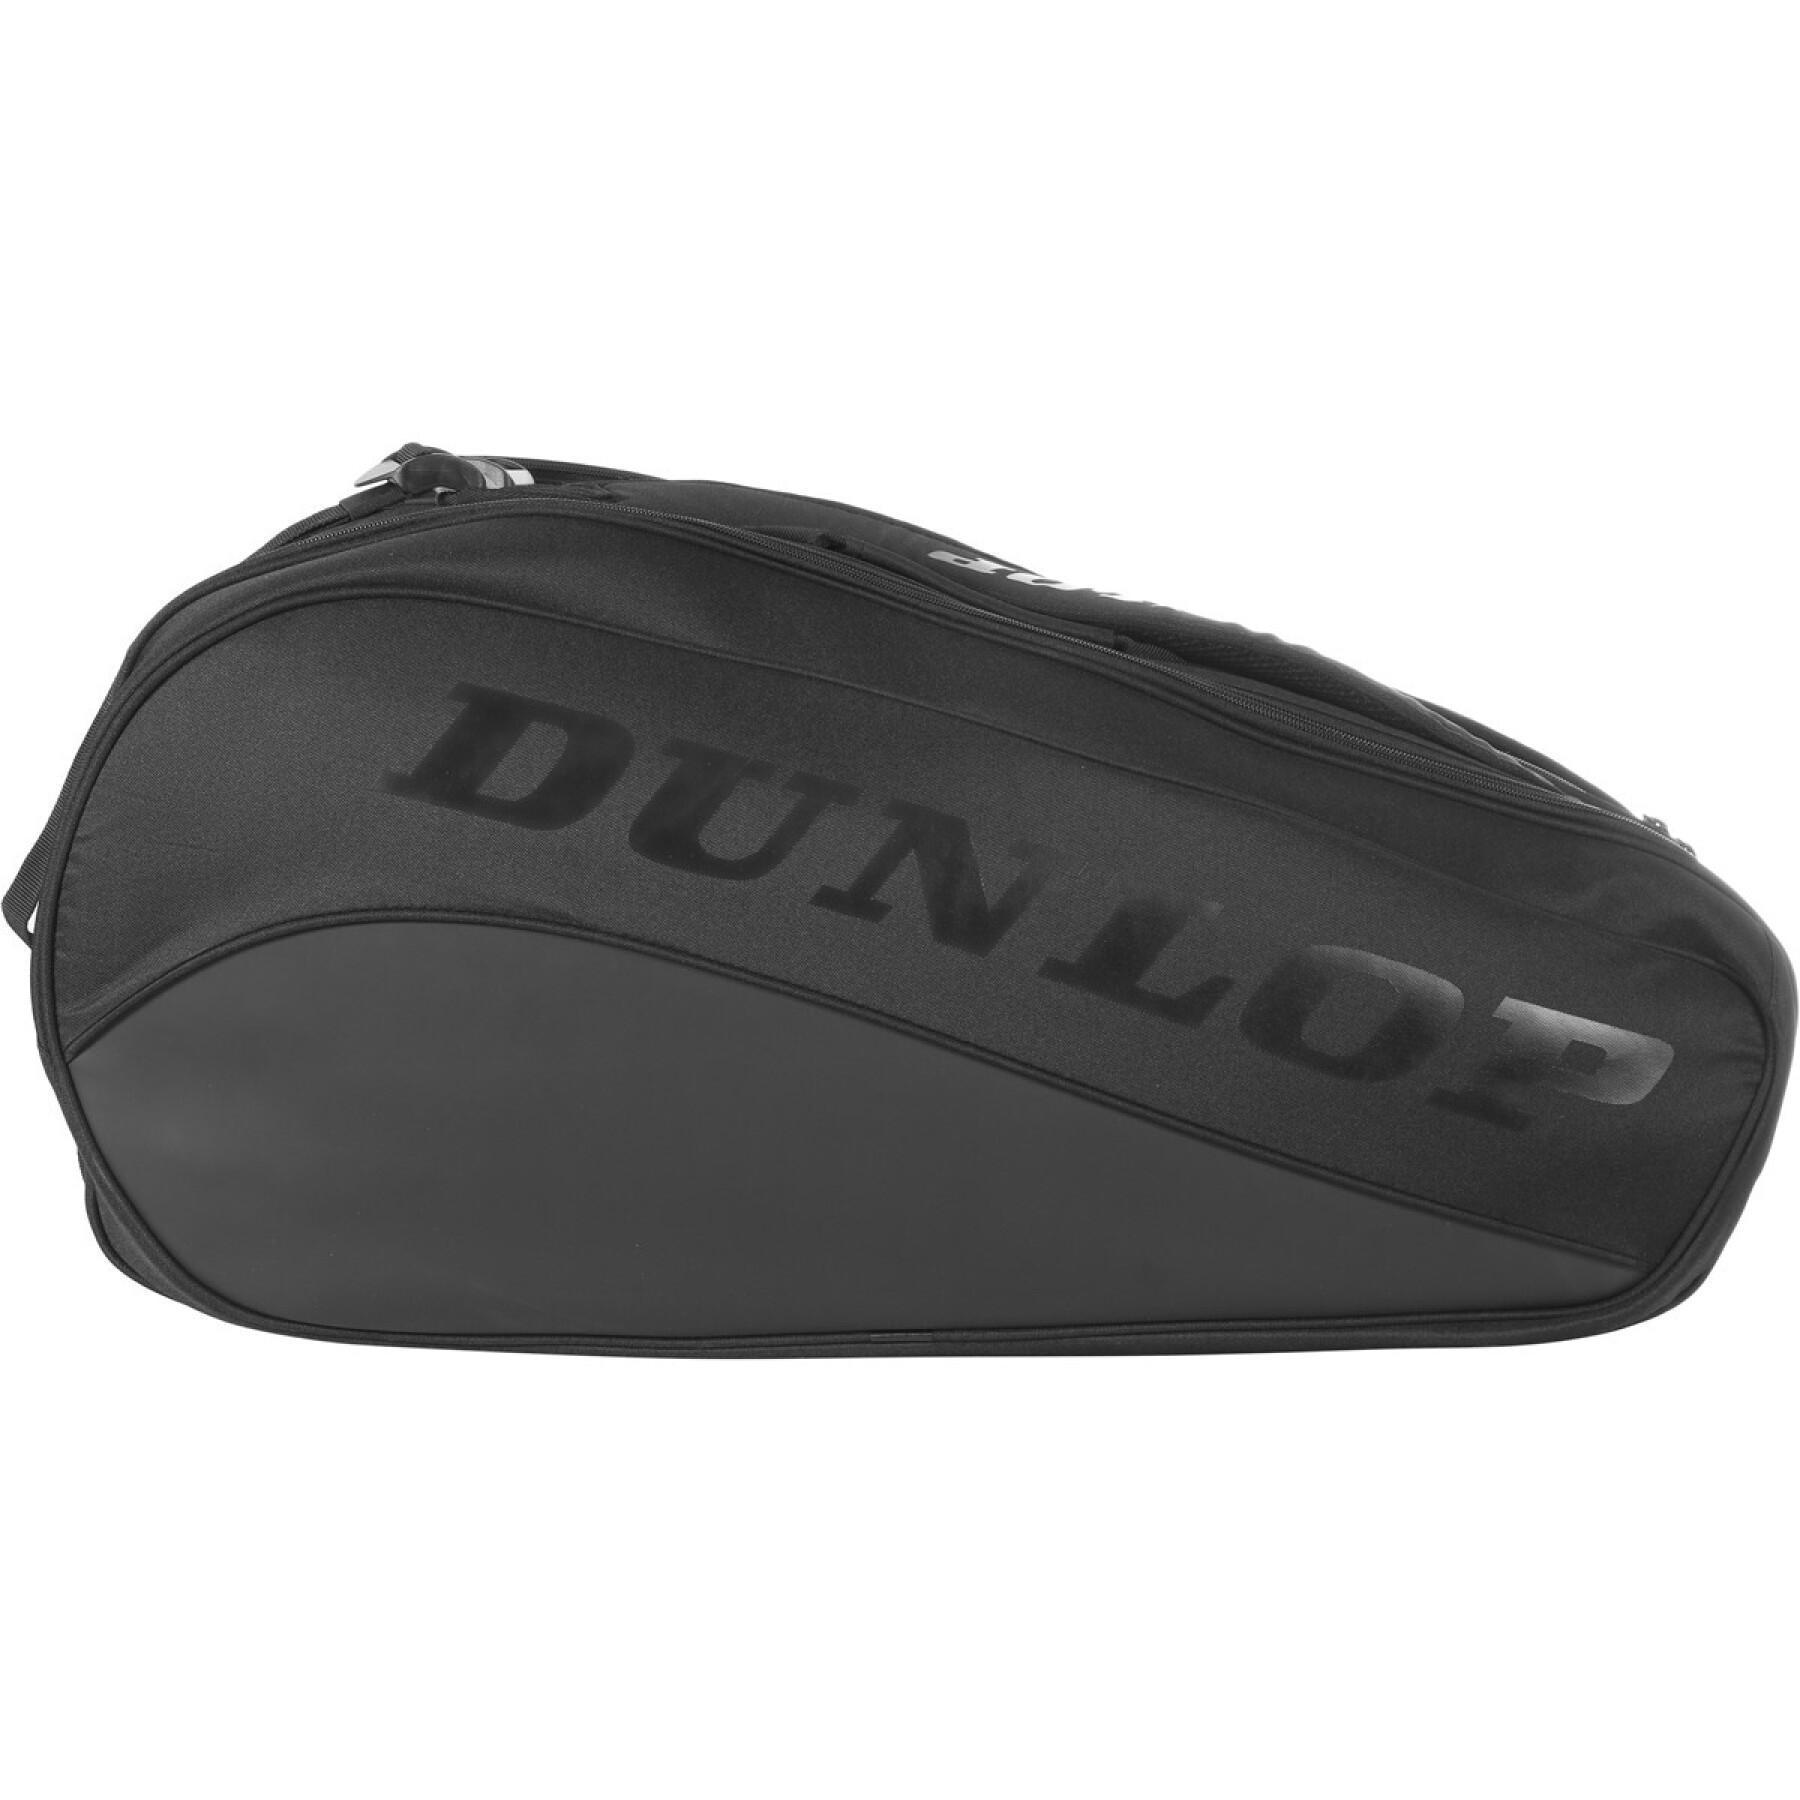 Väska för 12 tennisracketar Dunlop Team Thermo